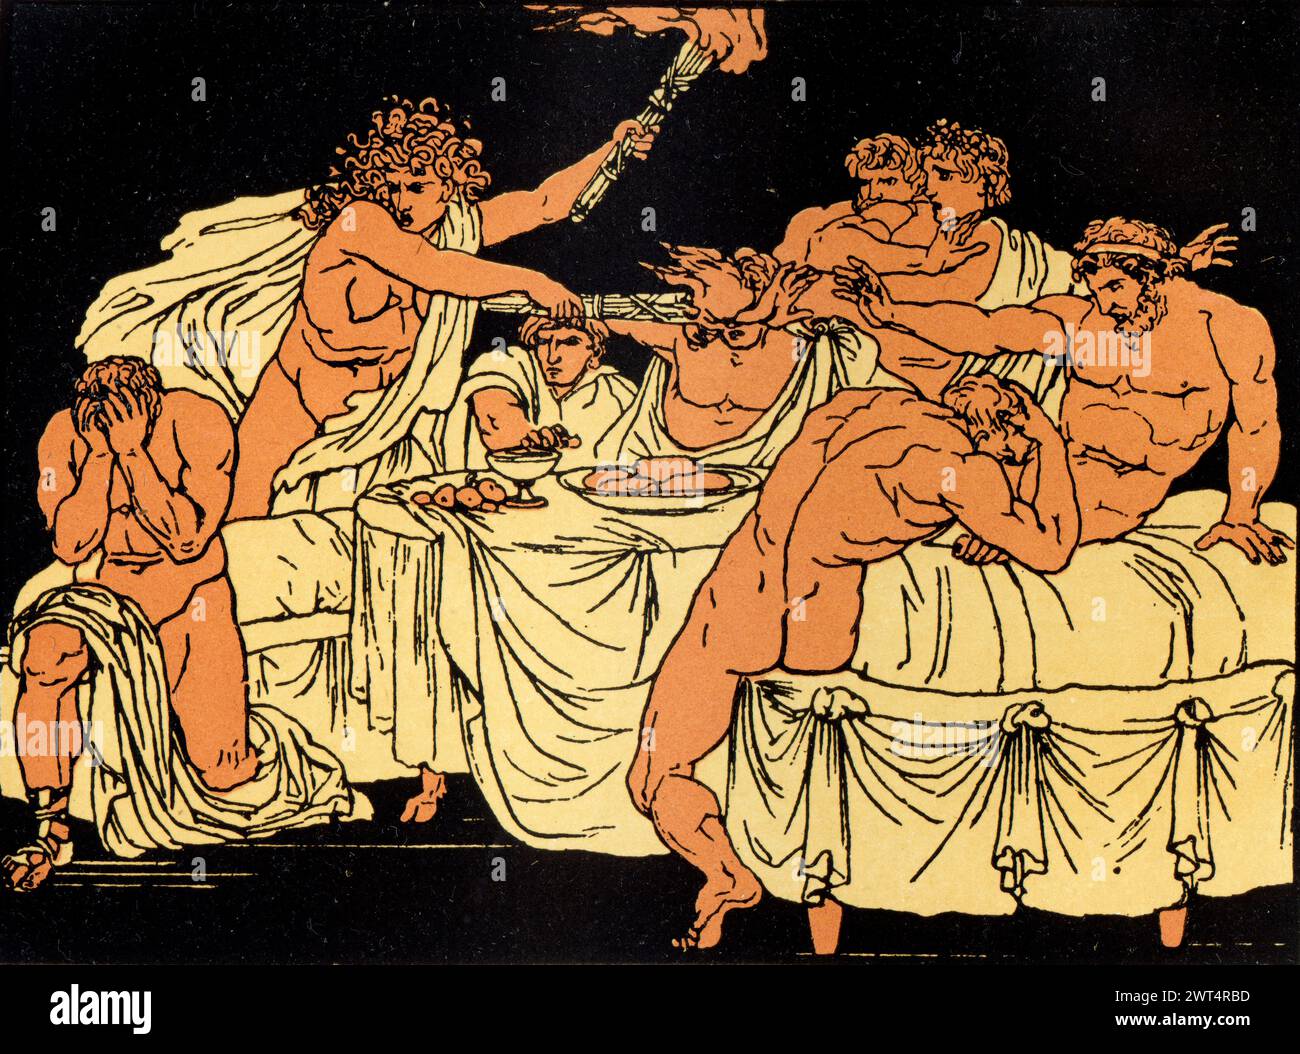 Vintage Illustration römische Mythologie, die Furcht am fest, Aeneid ein lateinisches Epos, das die legendäre Geschichte von Aeneas erzählt, einem Trojaner, der aus dem geflohen ist Stockfoto